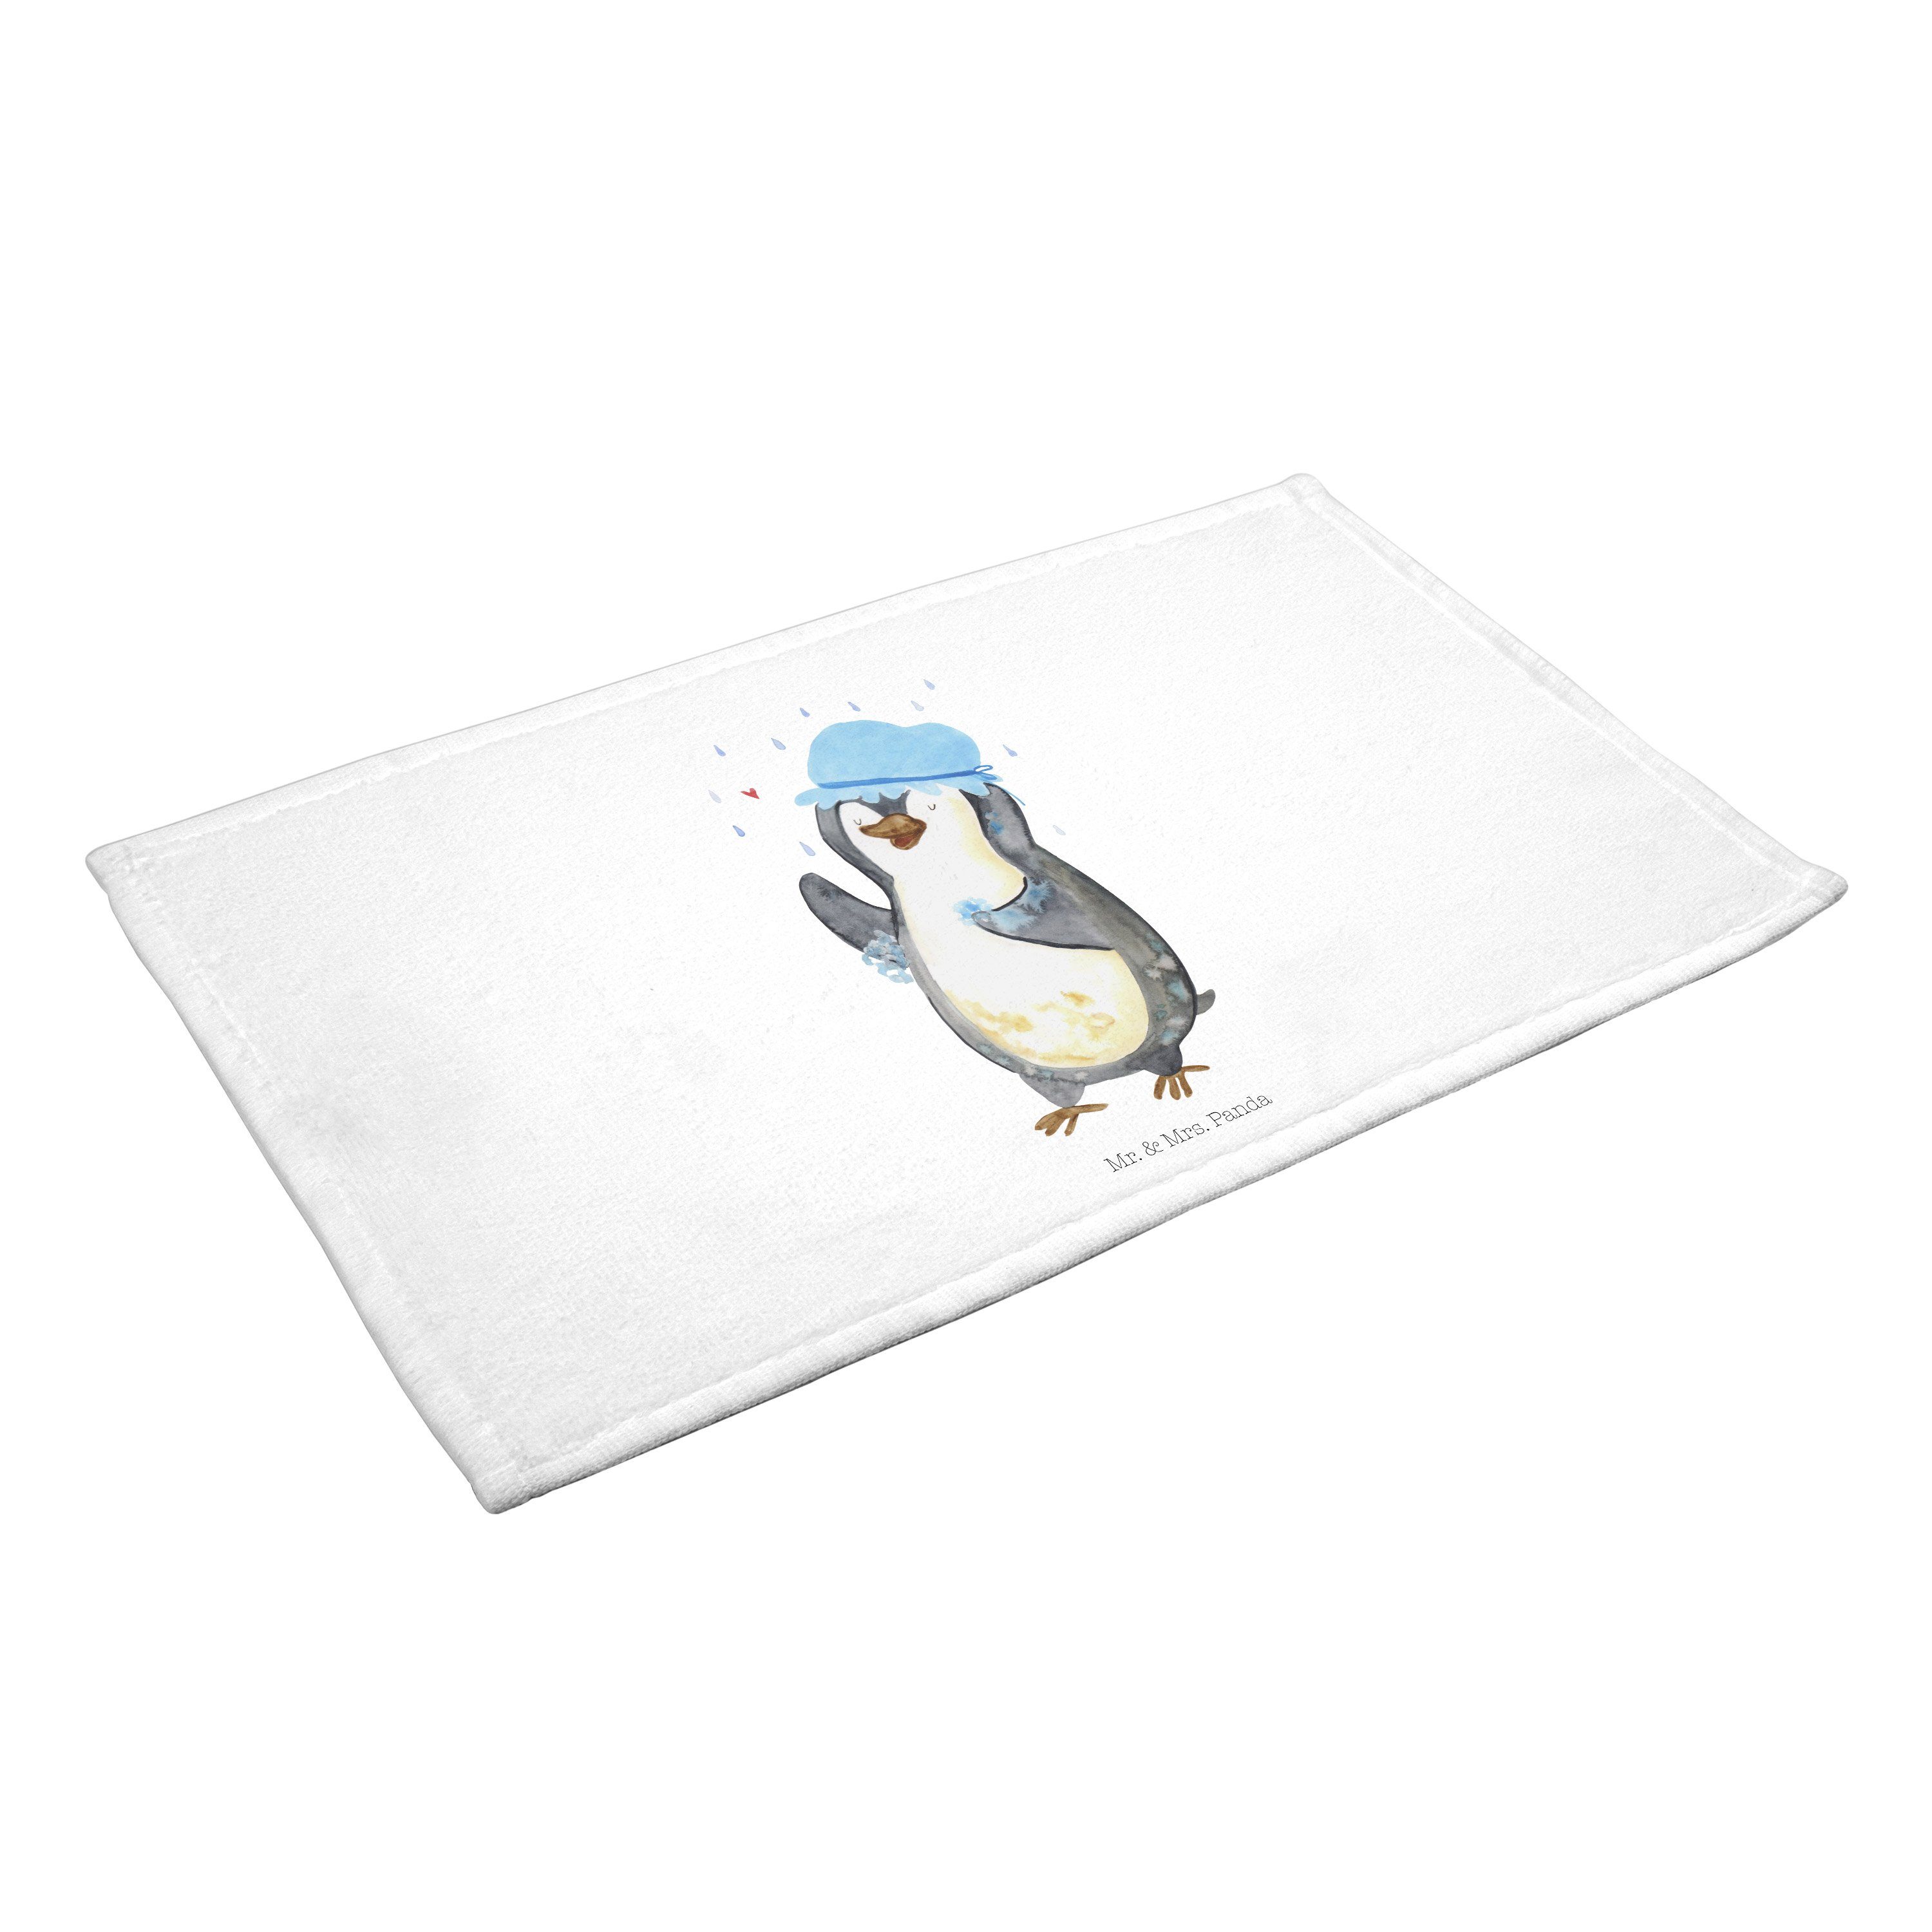 Mr. & Mrs. Panda Pinguin Geschenk, - Handtuch sein, - Weiß Duschkonzert, duscht Kinde, glücklich (1-St)